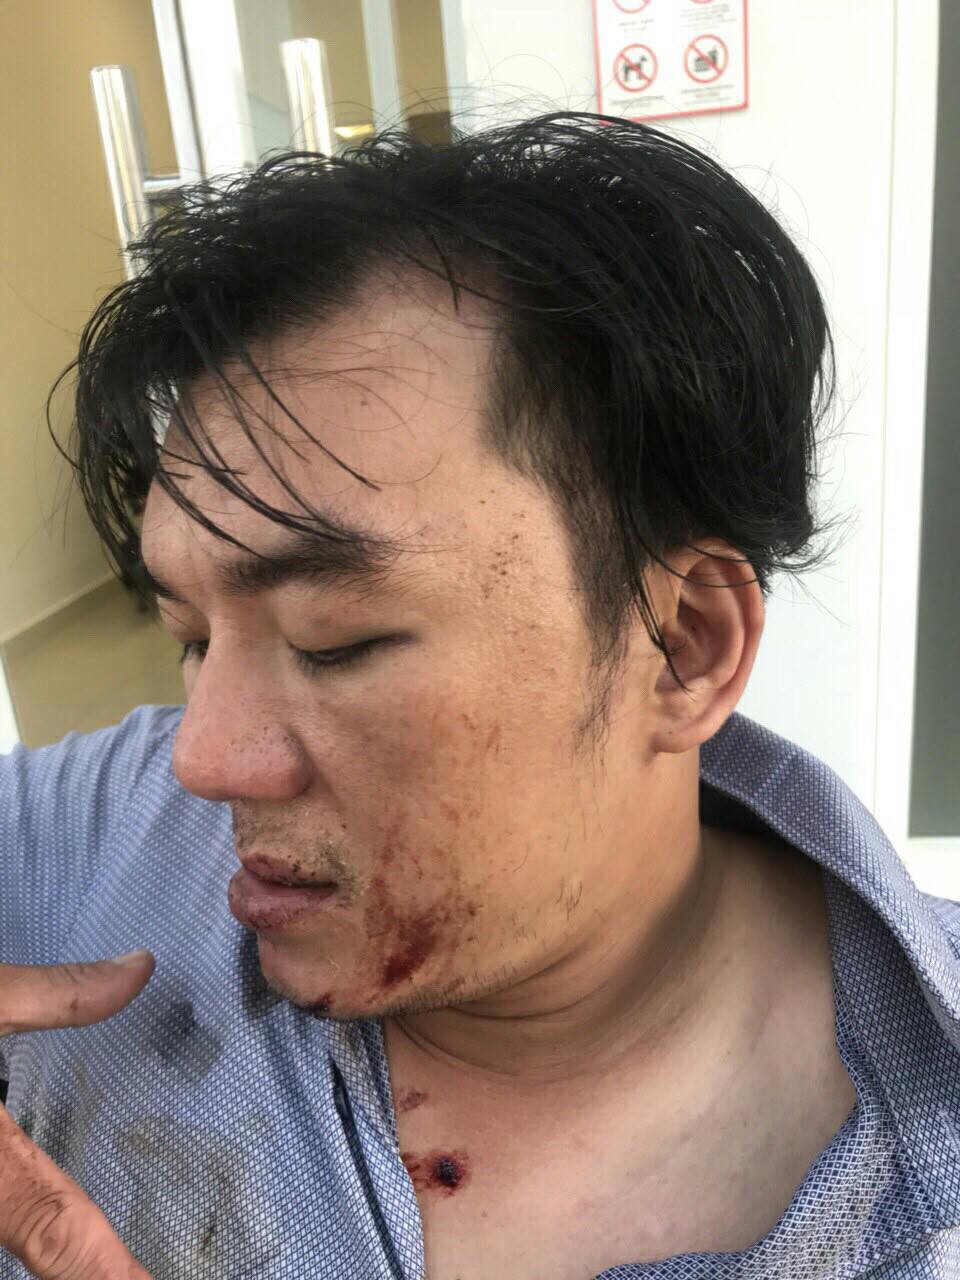 Khách tố bị nhân viên đuổi đánh dã man sau bữa ăn ở Đà Nẵng, quản lý nhà hàng nói gì? - Ảnh 1.